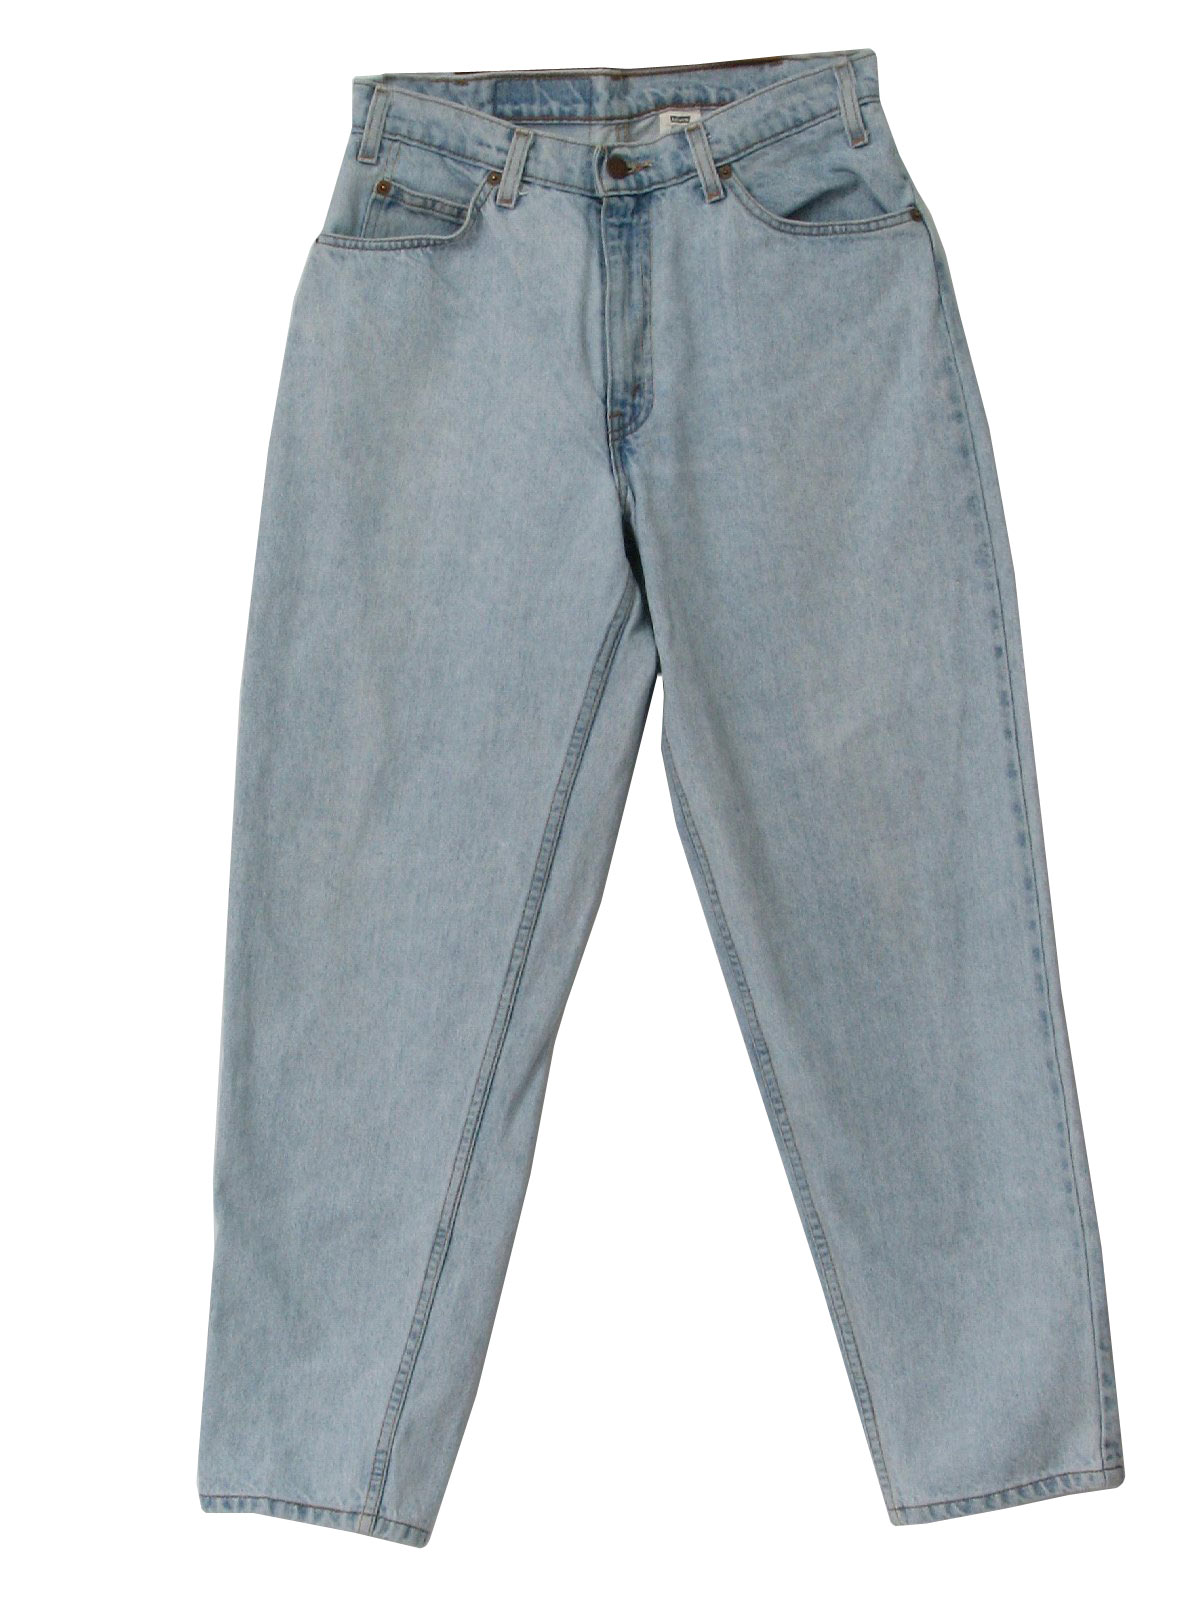 levis 80s jeans